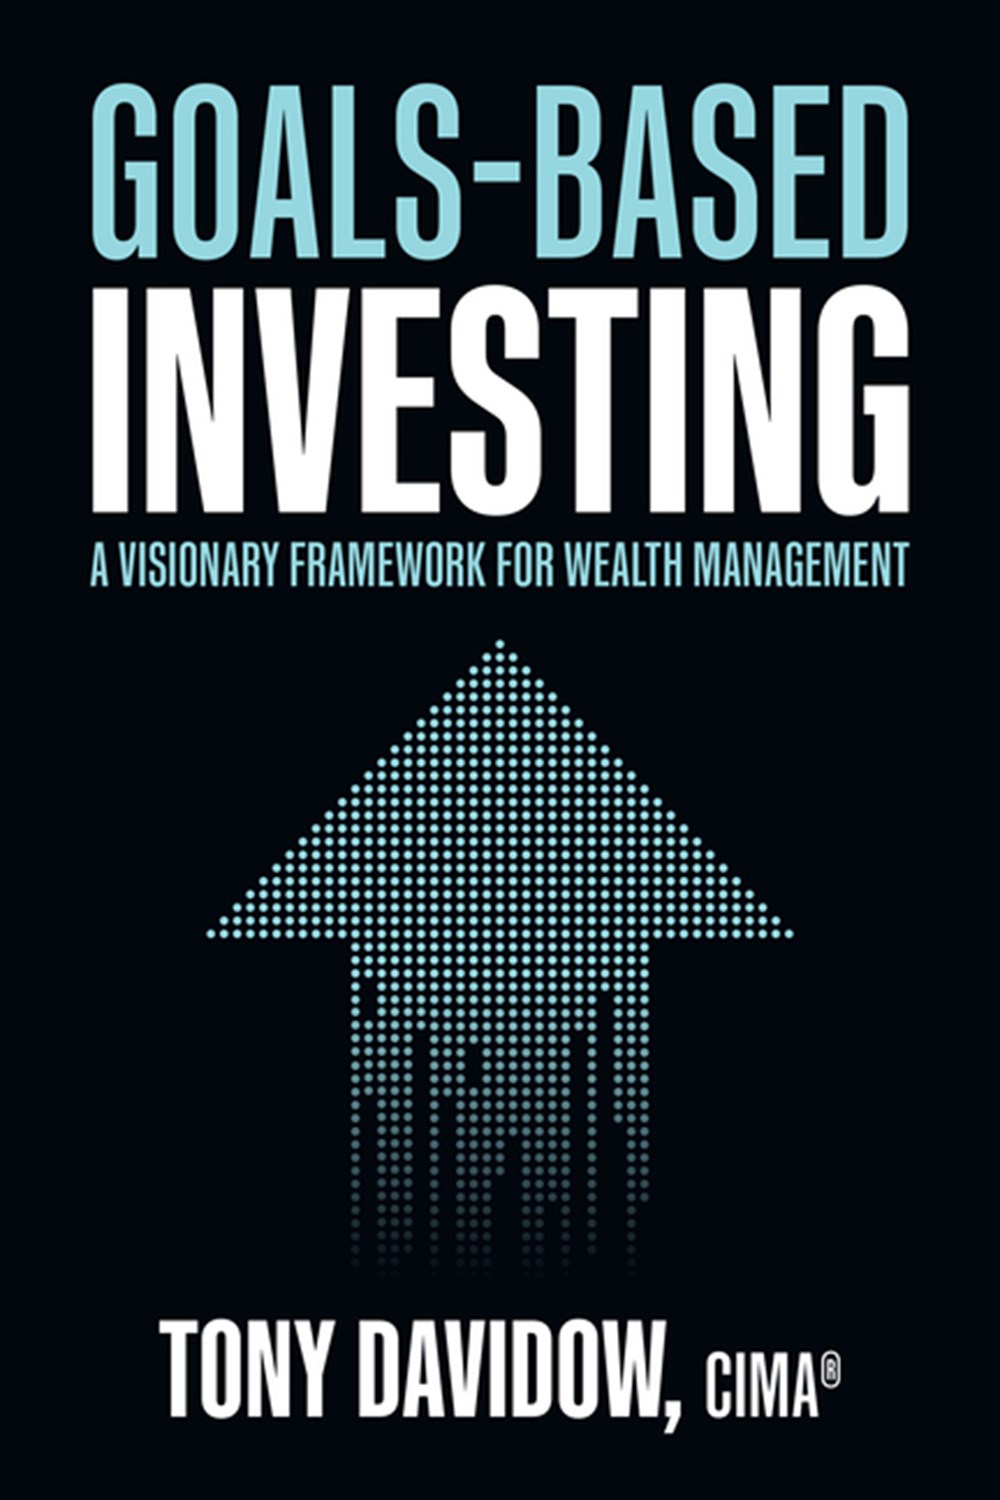  Goals-Based Investing: A Visionary Framework for Wealth Management